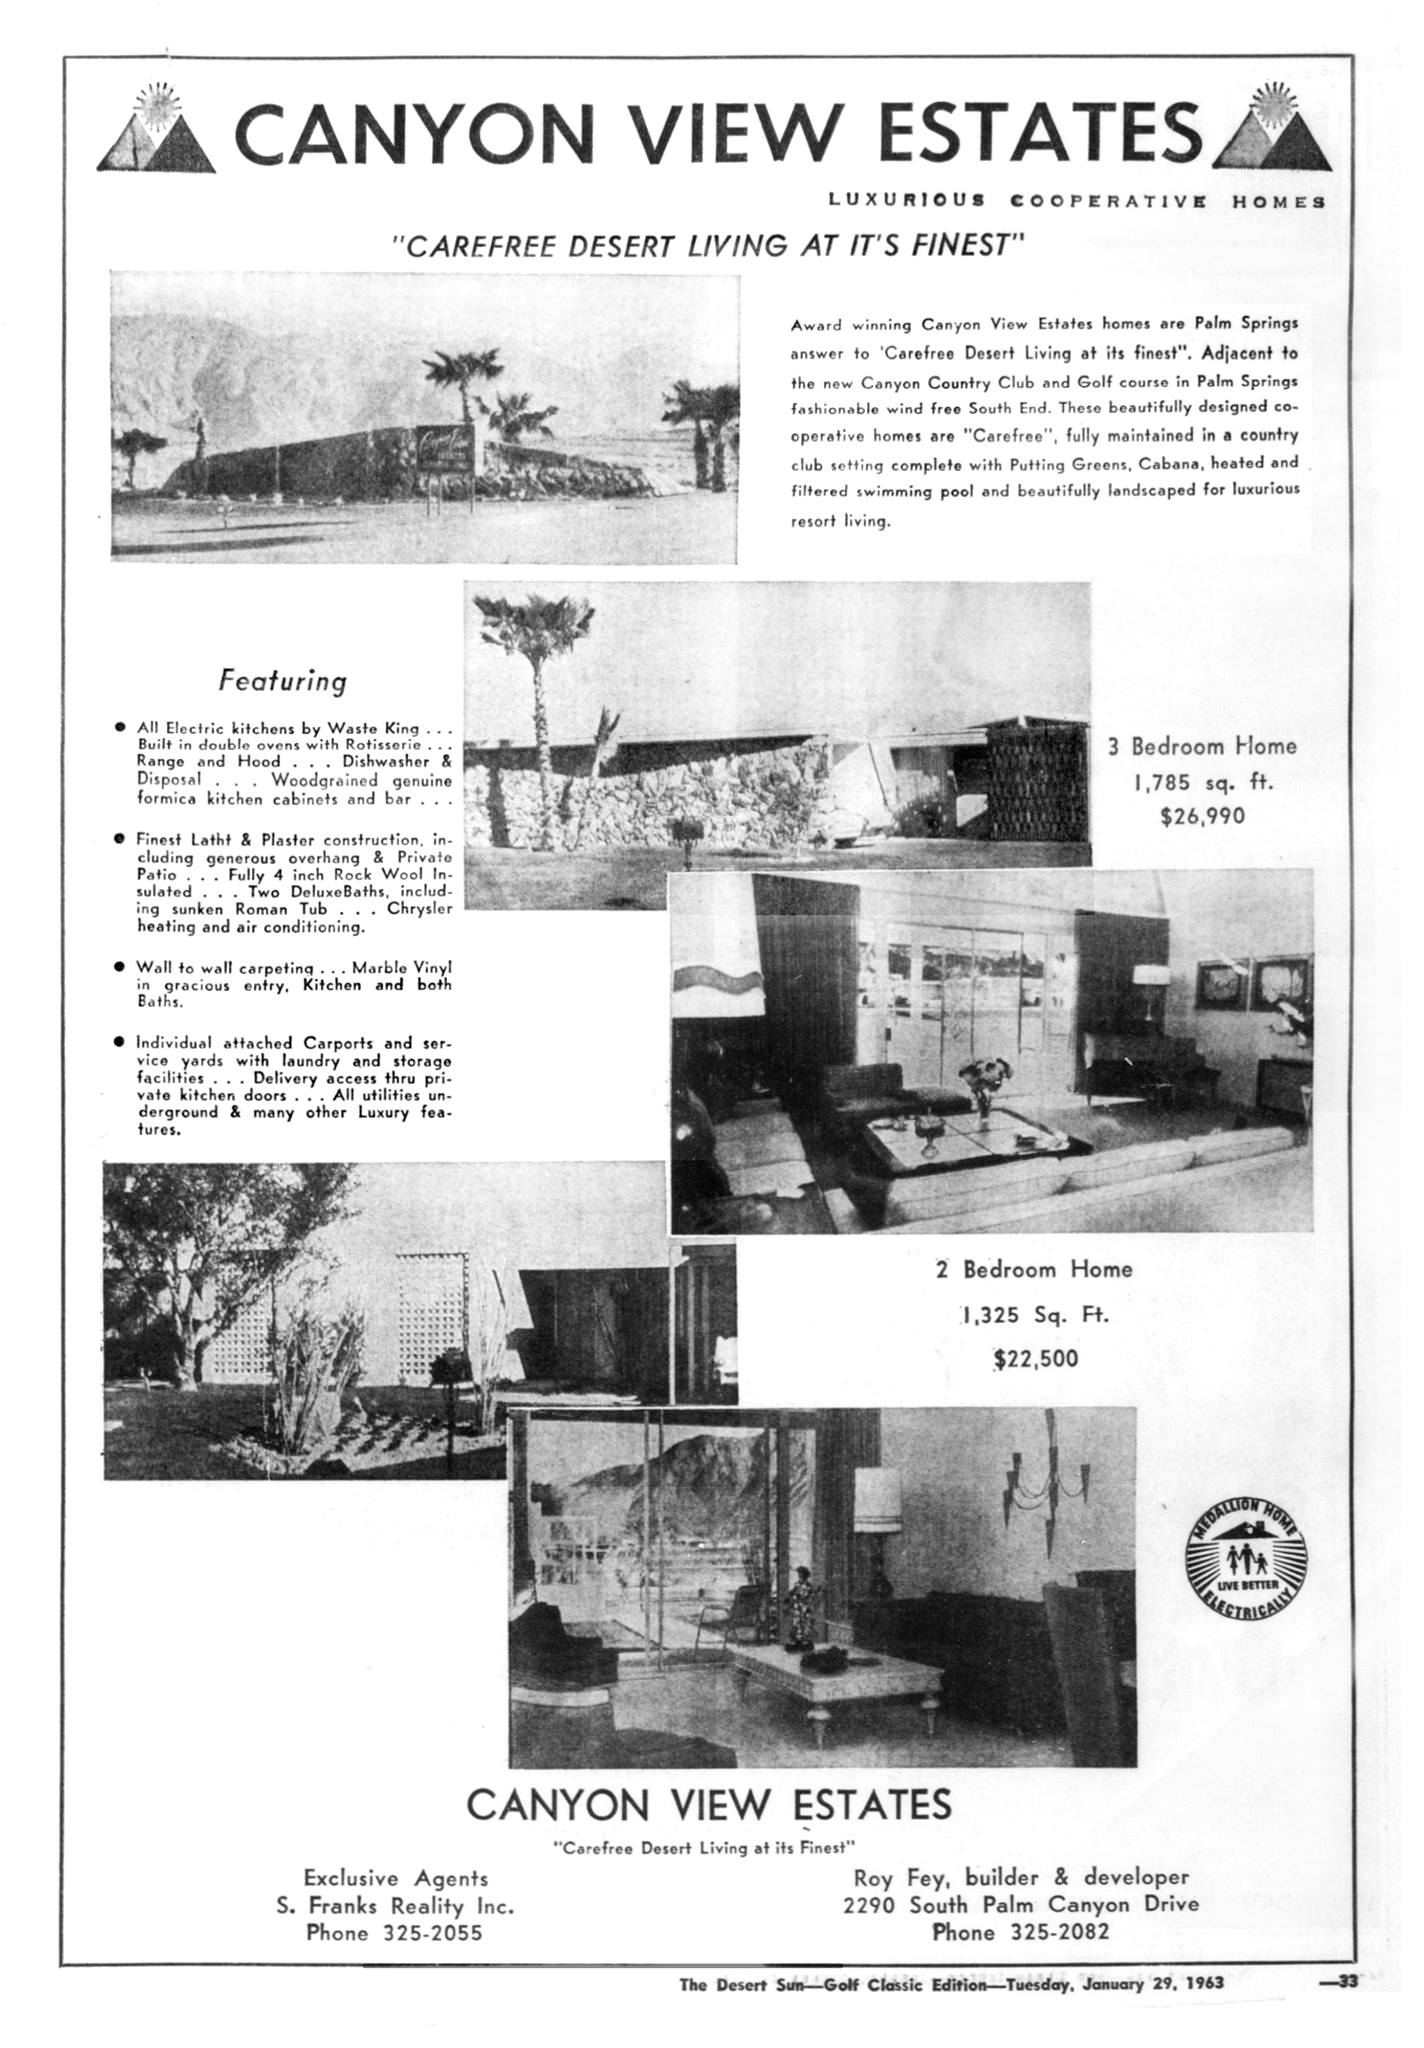 Canyon View Estates 1963 Ad&conn=none